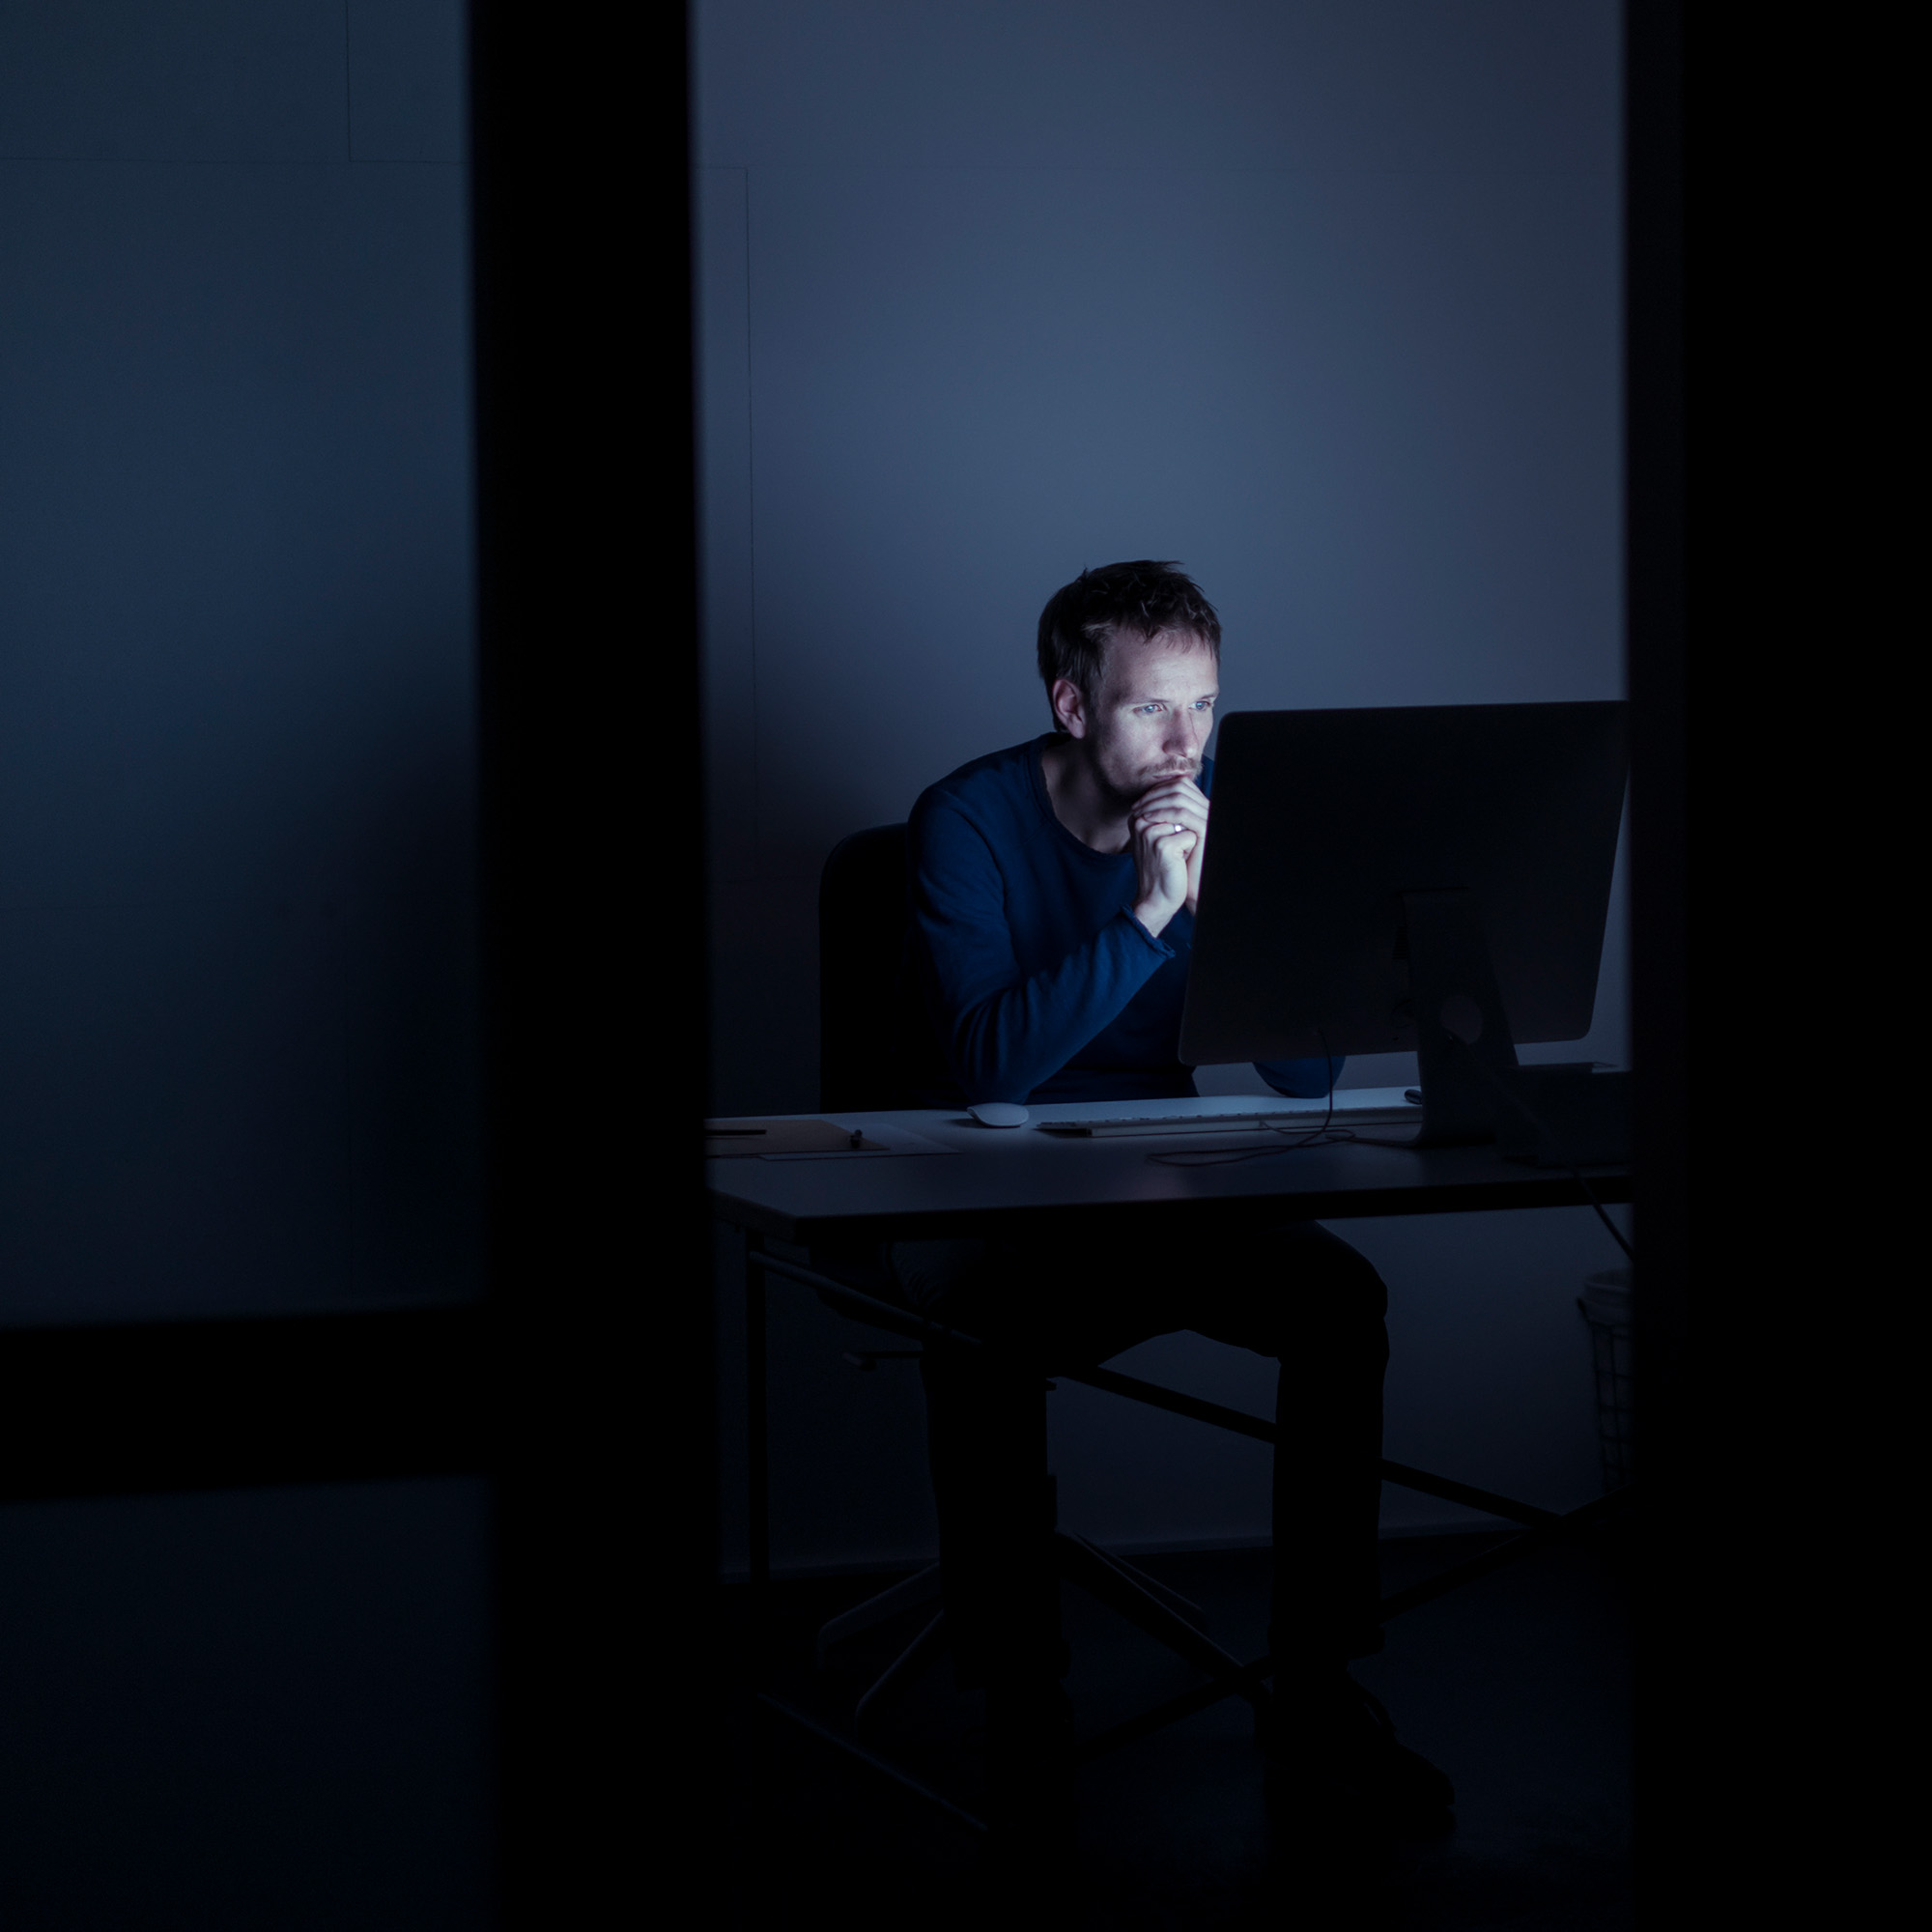 Mann sitzt im Dunkeln vor dem Computer und blauen Bildschirmlicht